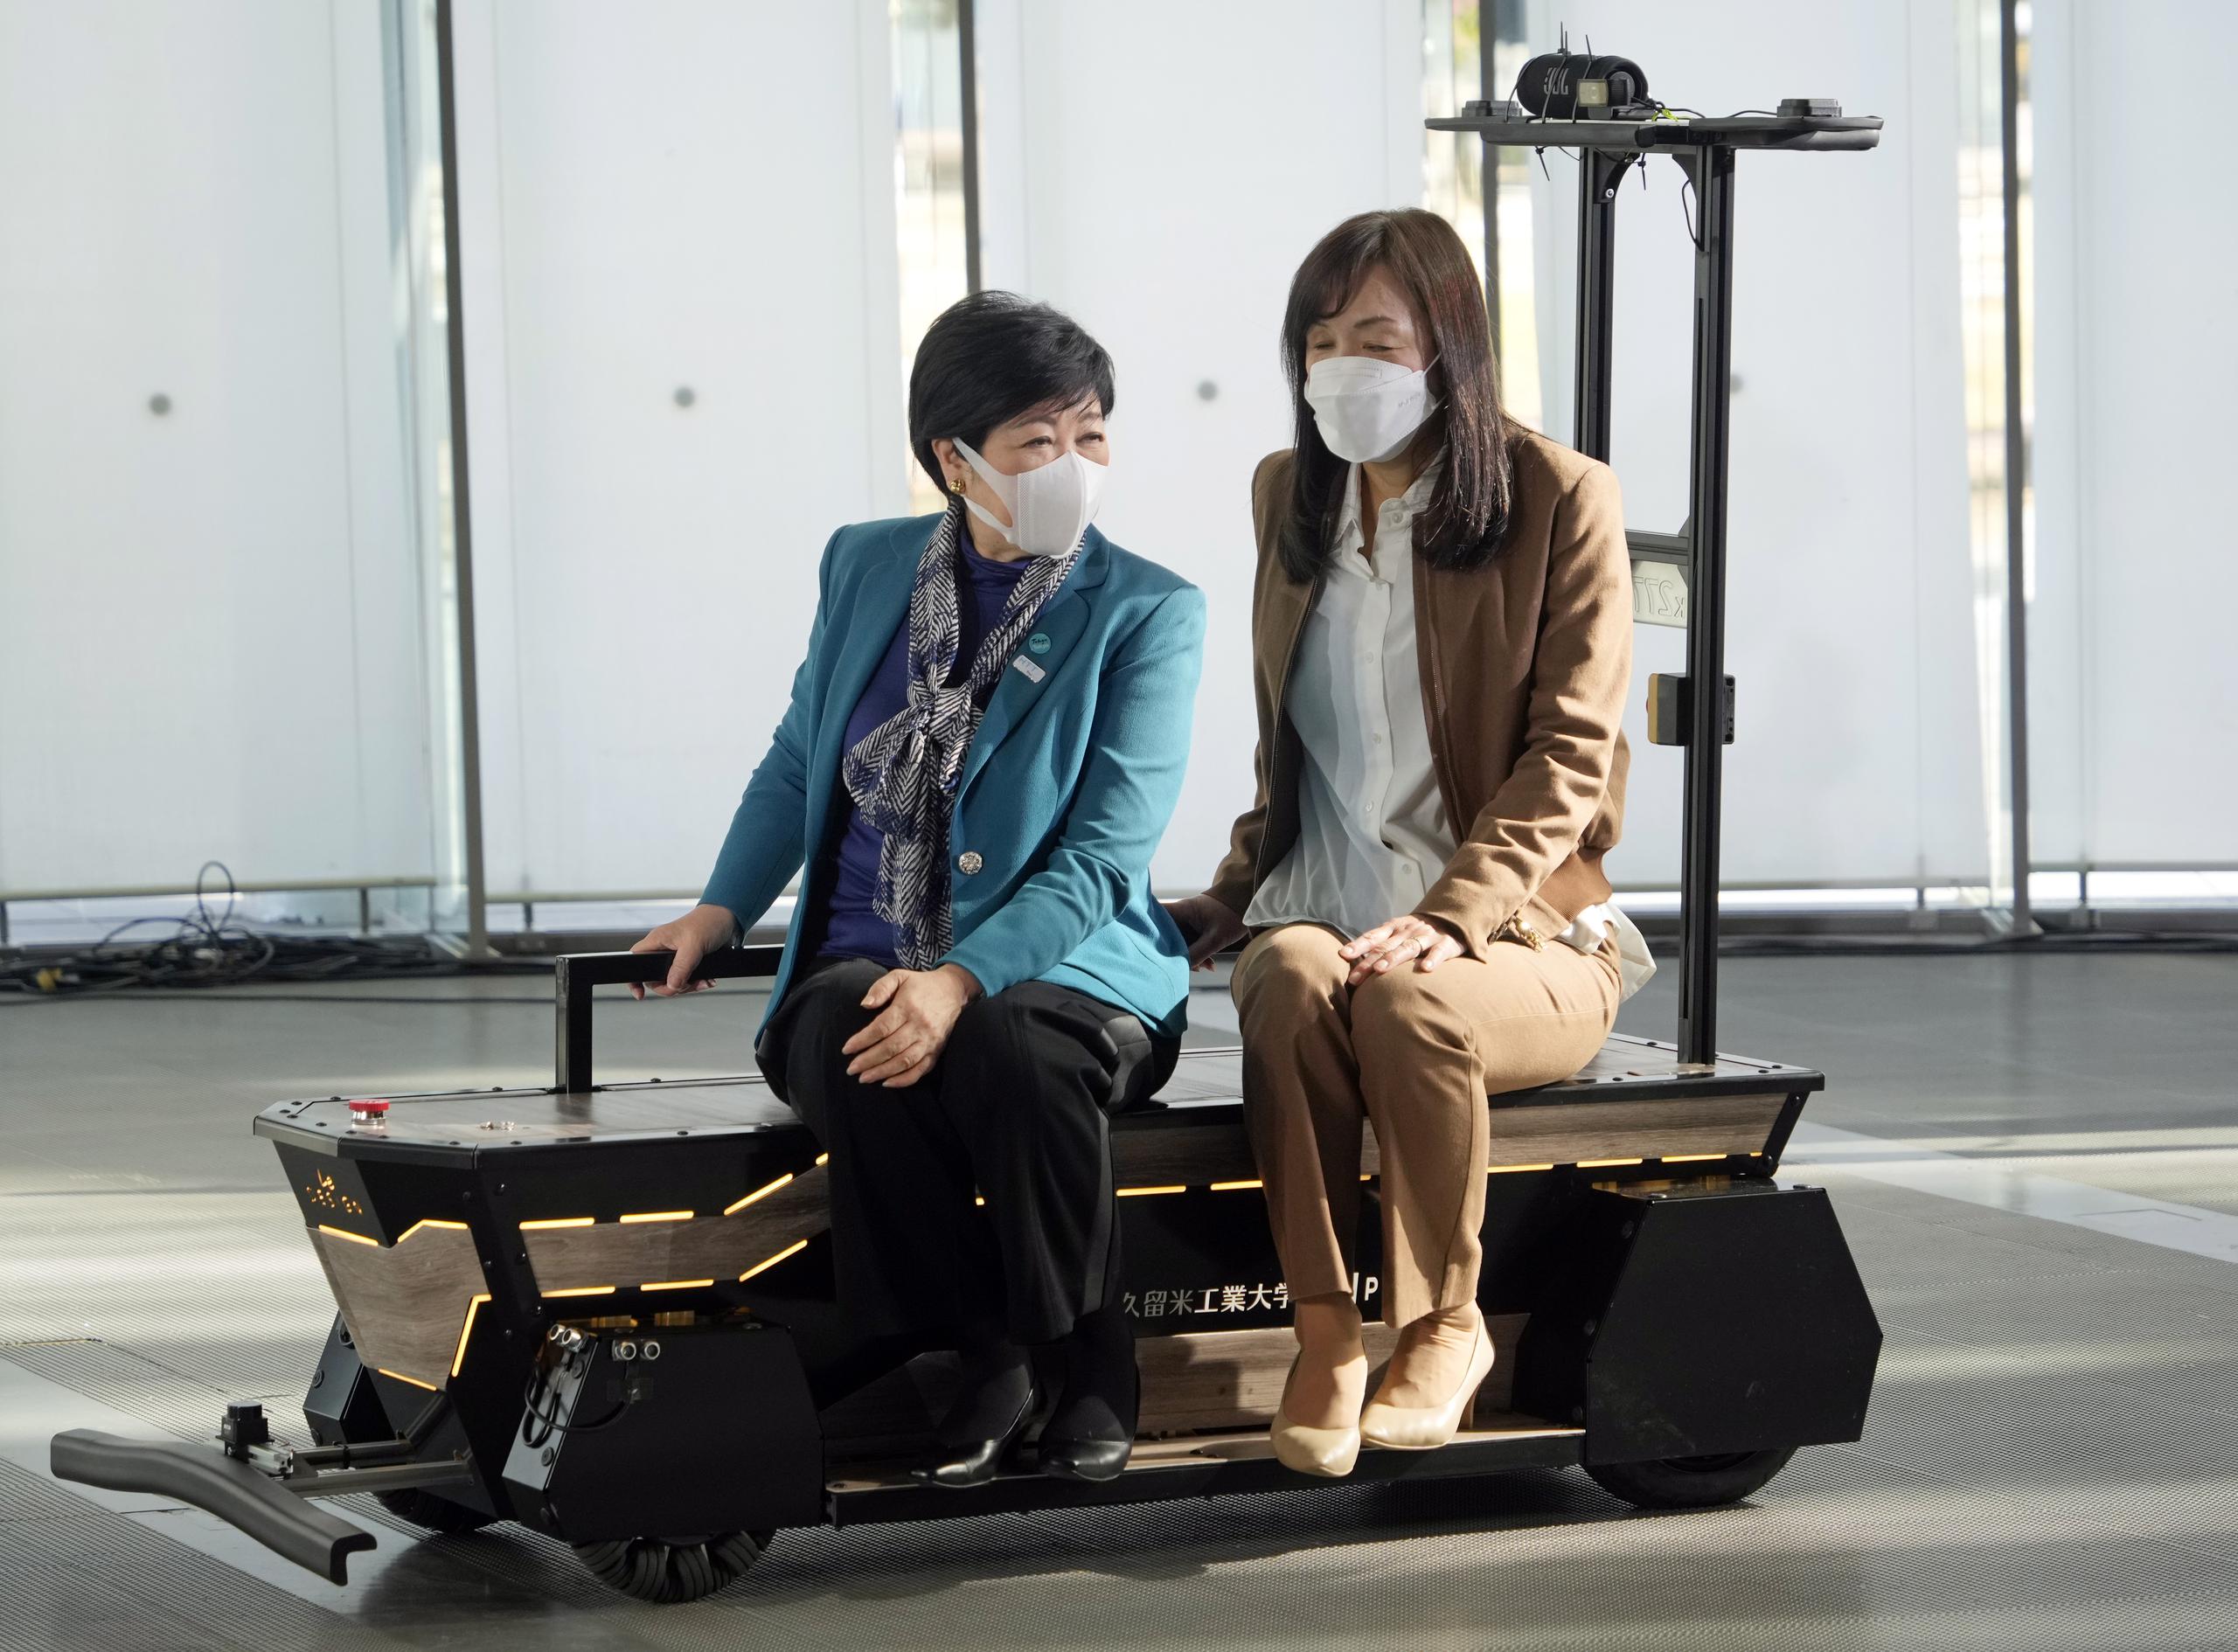 La idea de crear una maleta con IA vino de la propia experiencia de Chieko Asakawa, ya que quería lograr una movilidad independiente, especialmente en un entorno estresante. (EFE/EPA/FRANCK ROBICHON)